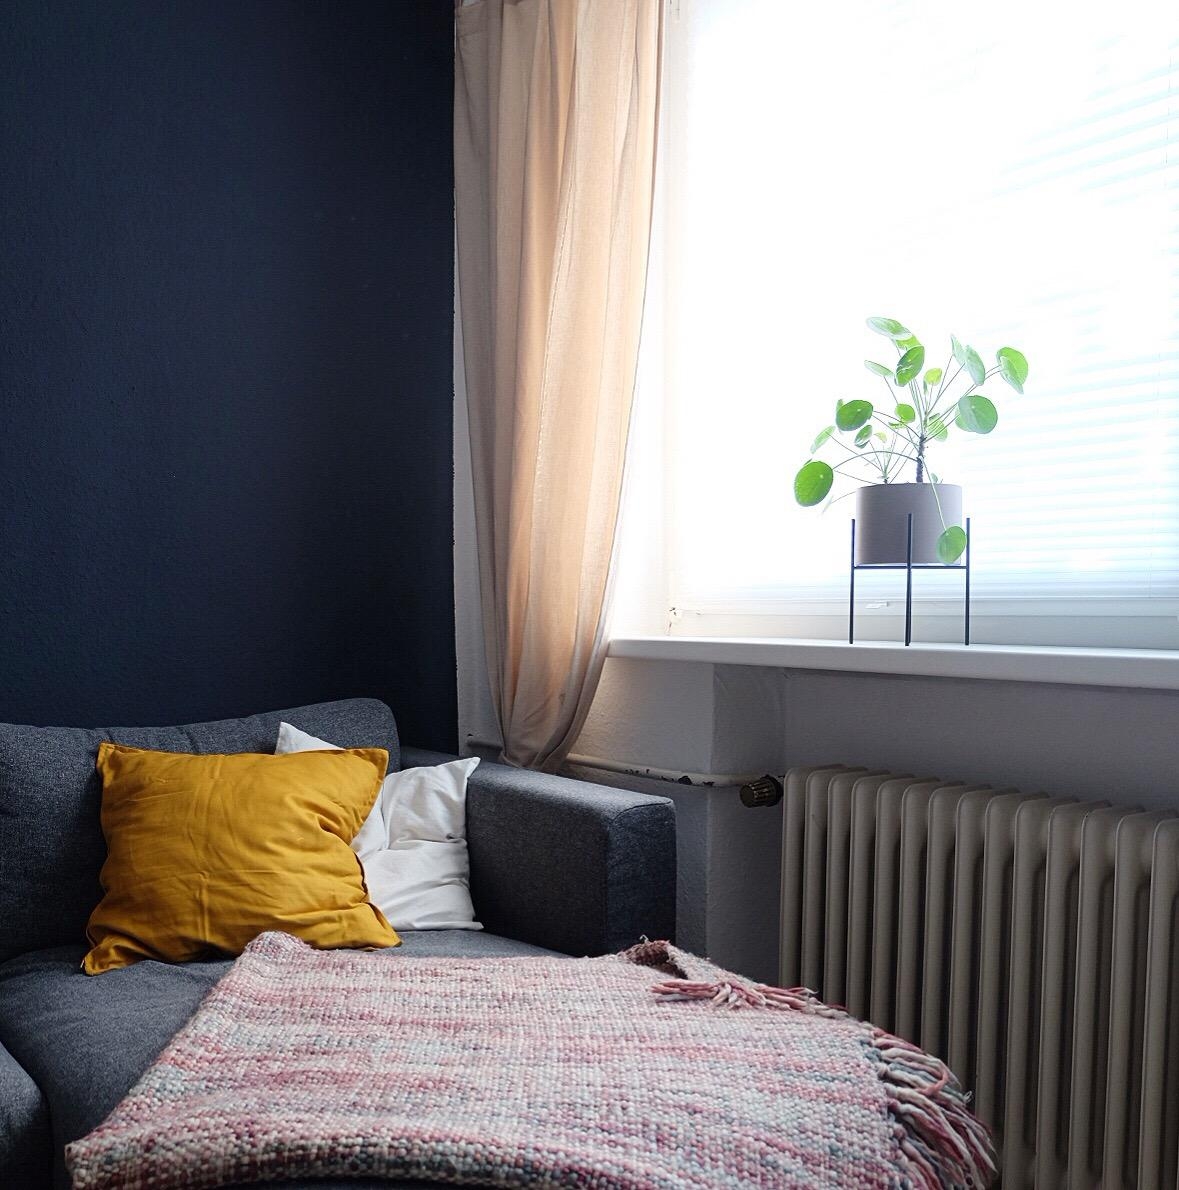 Blaue Wand + senfgelbe Kissen = 💕
#Wohnzimmer #couchliebt #architectsfinest #belem #schönerwohnenfarbe 